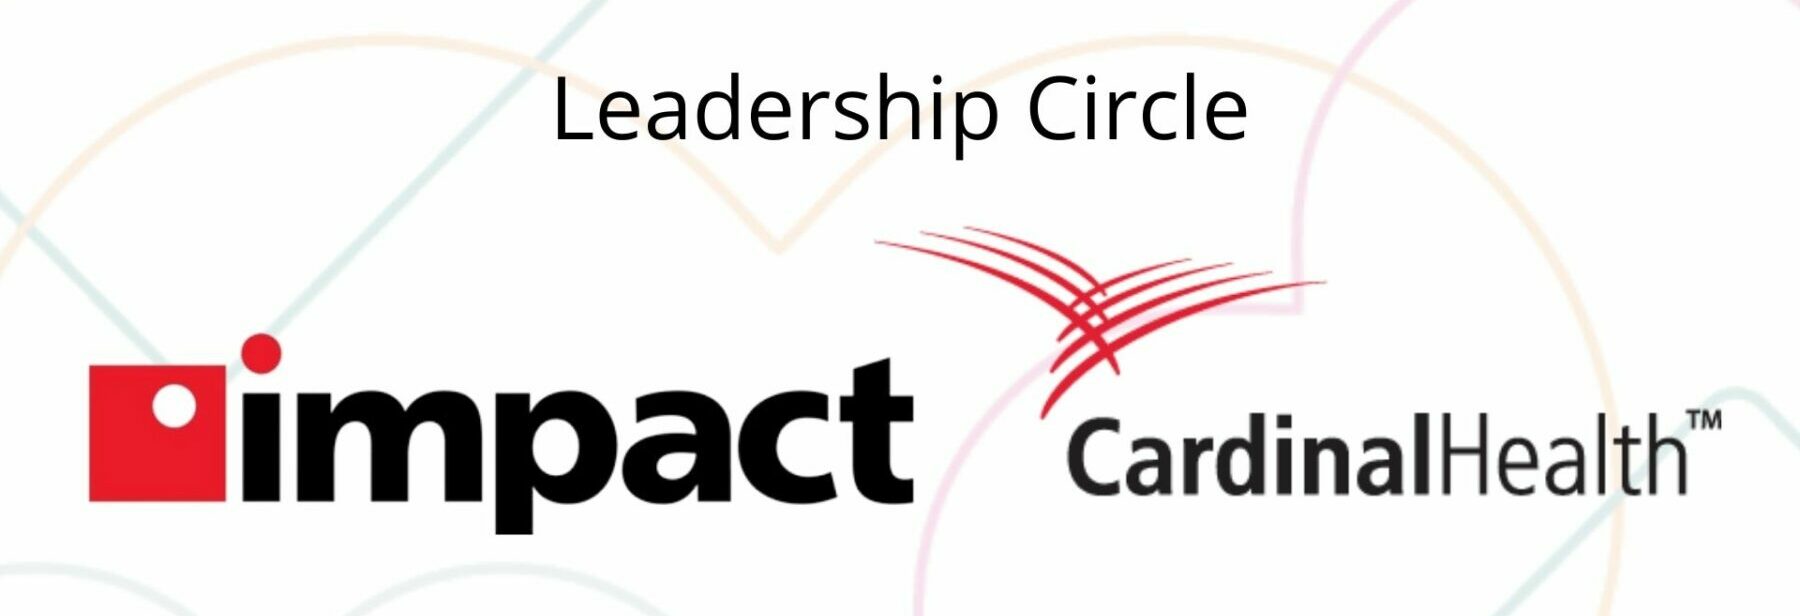 leadership circle sponsor logos gala 2022